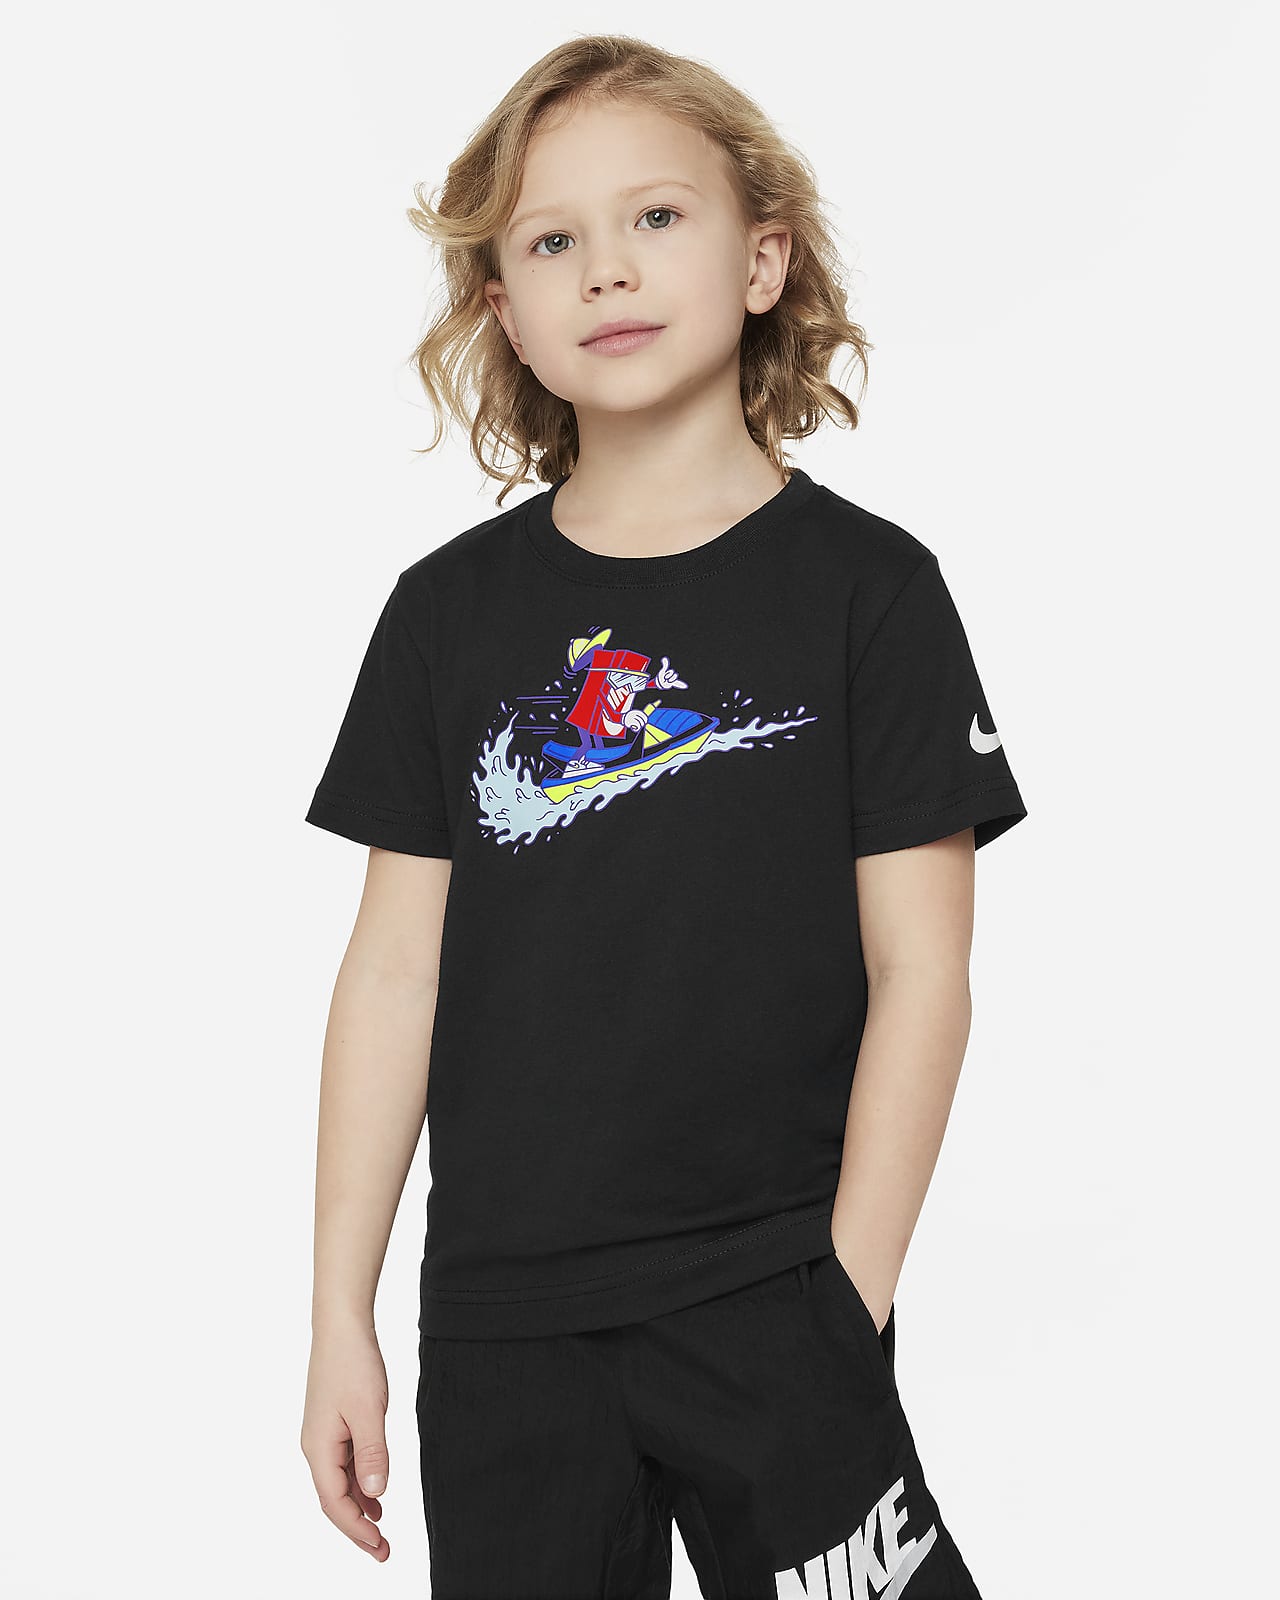 T-Shirt Boxy Jet Ski Nike για μικρά παιδιά